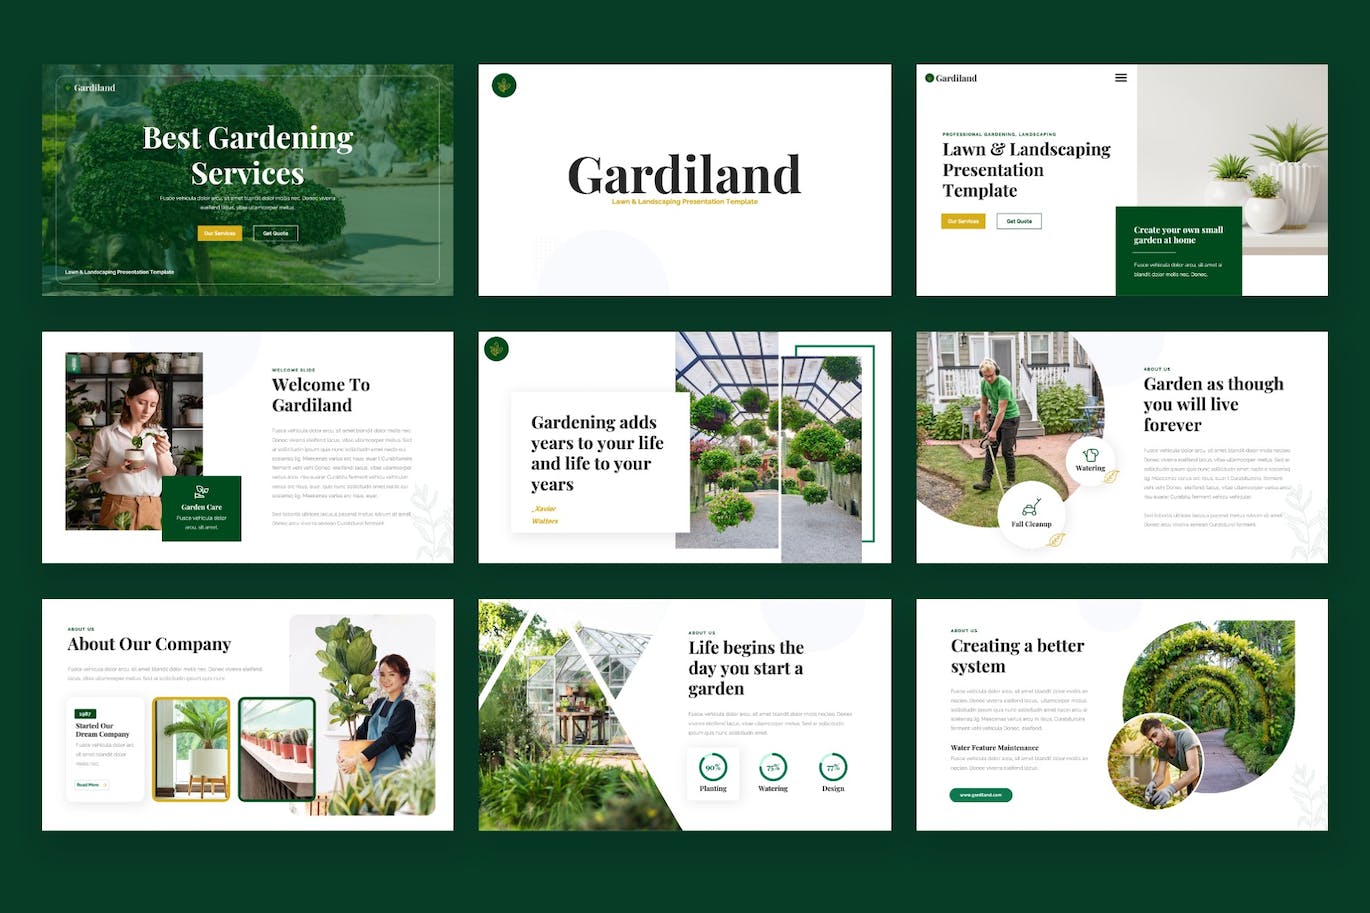 草坪和园林绿化PPT幻灯片设计模板 GARDILAND – Lawn & Landscaping Powerpoint Template 幻灯图表 第5张